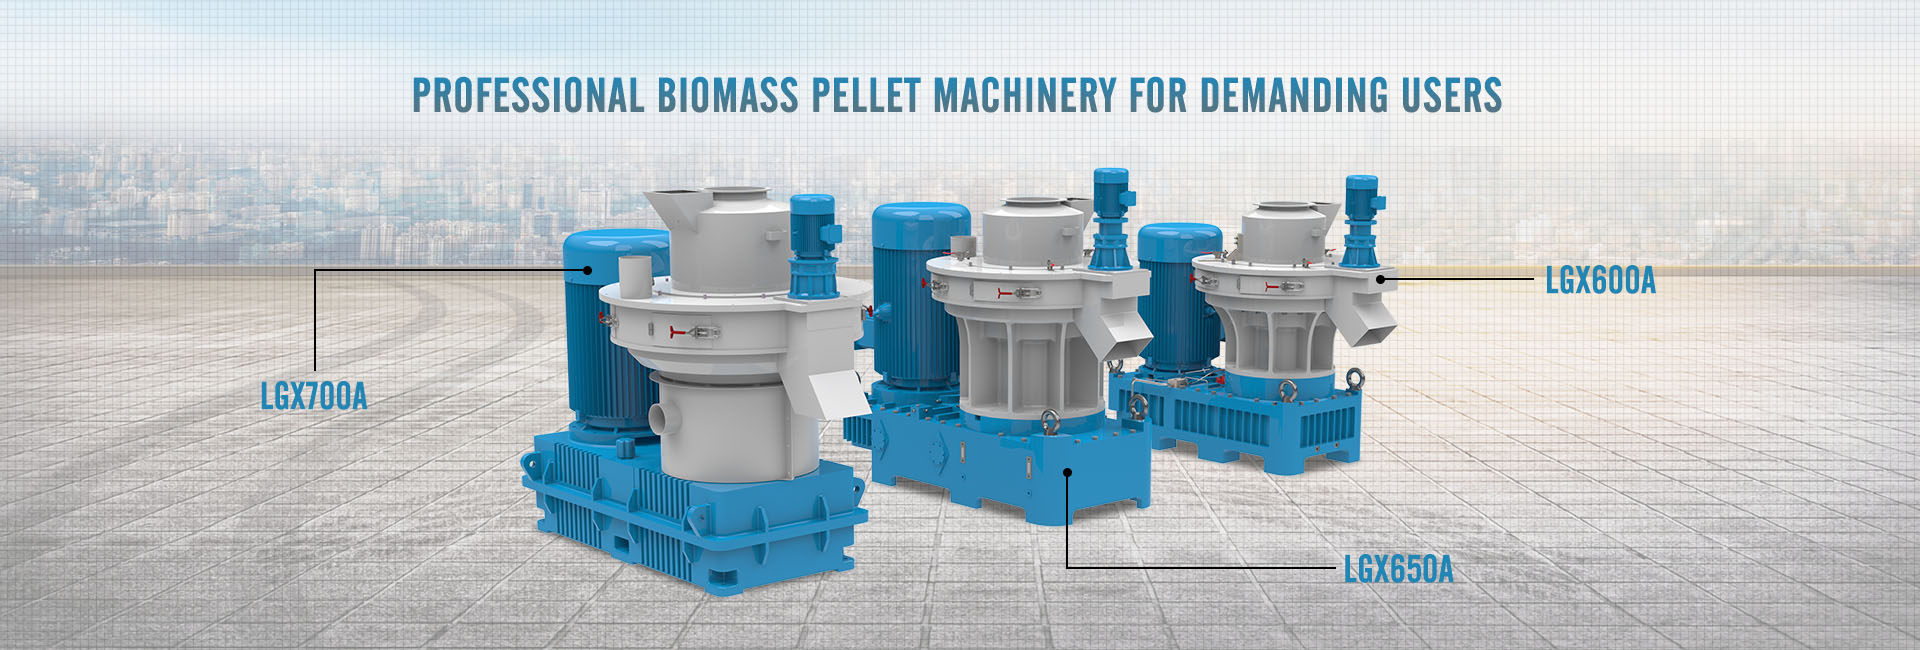 Profesjonell biomasse pellet maskiner for krevende brukere